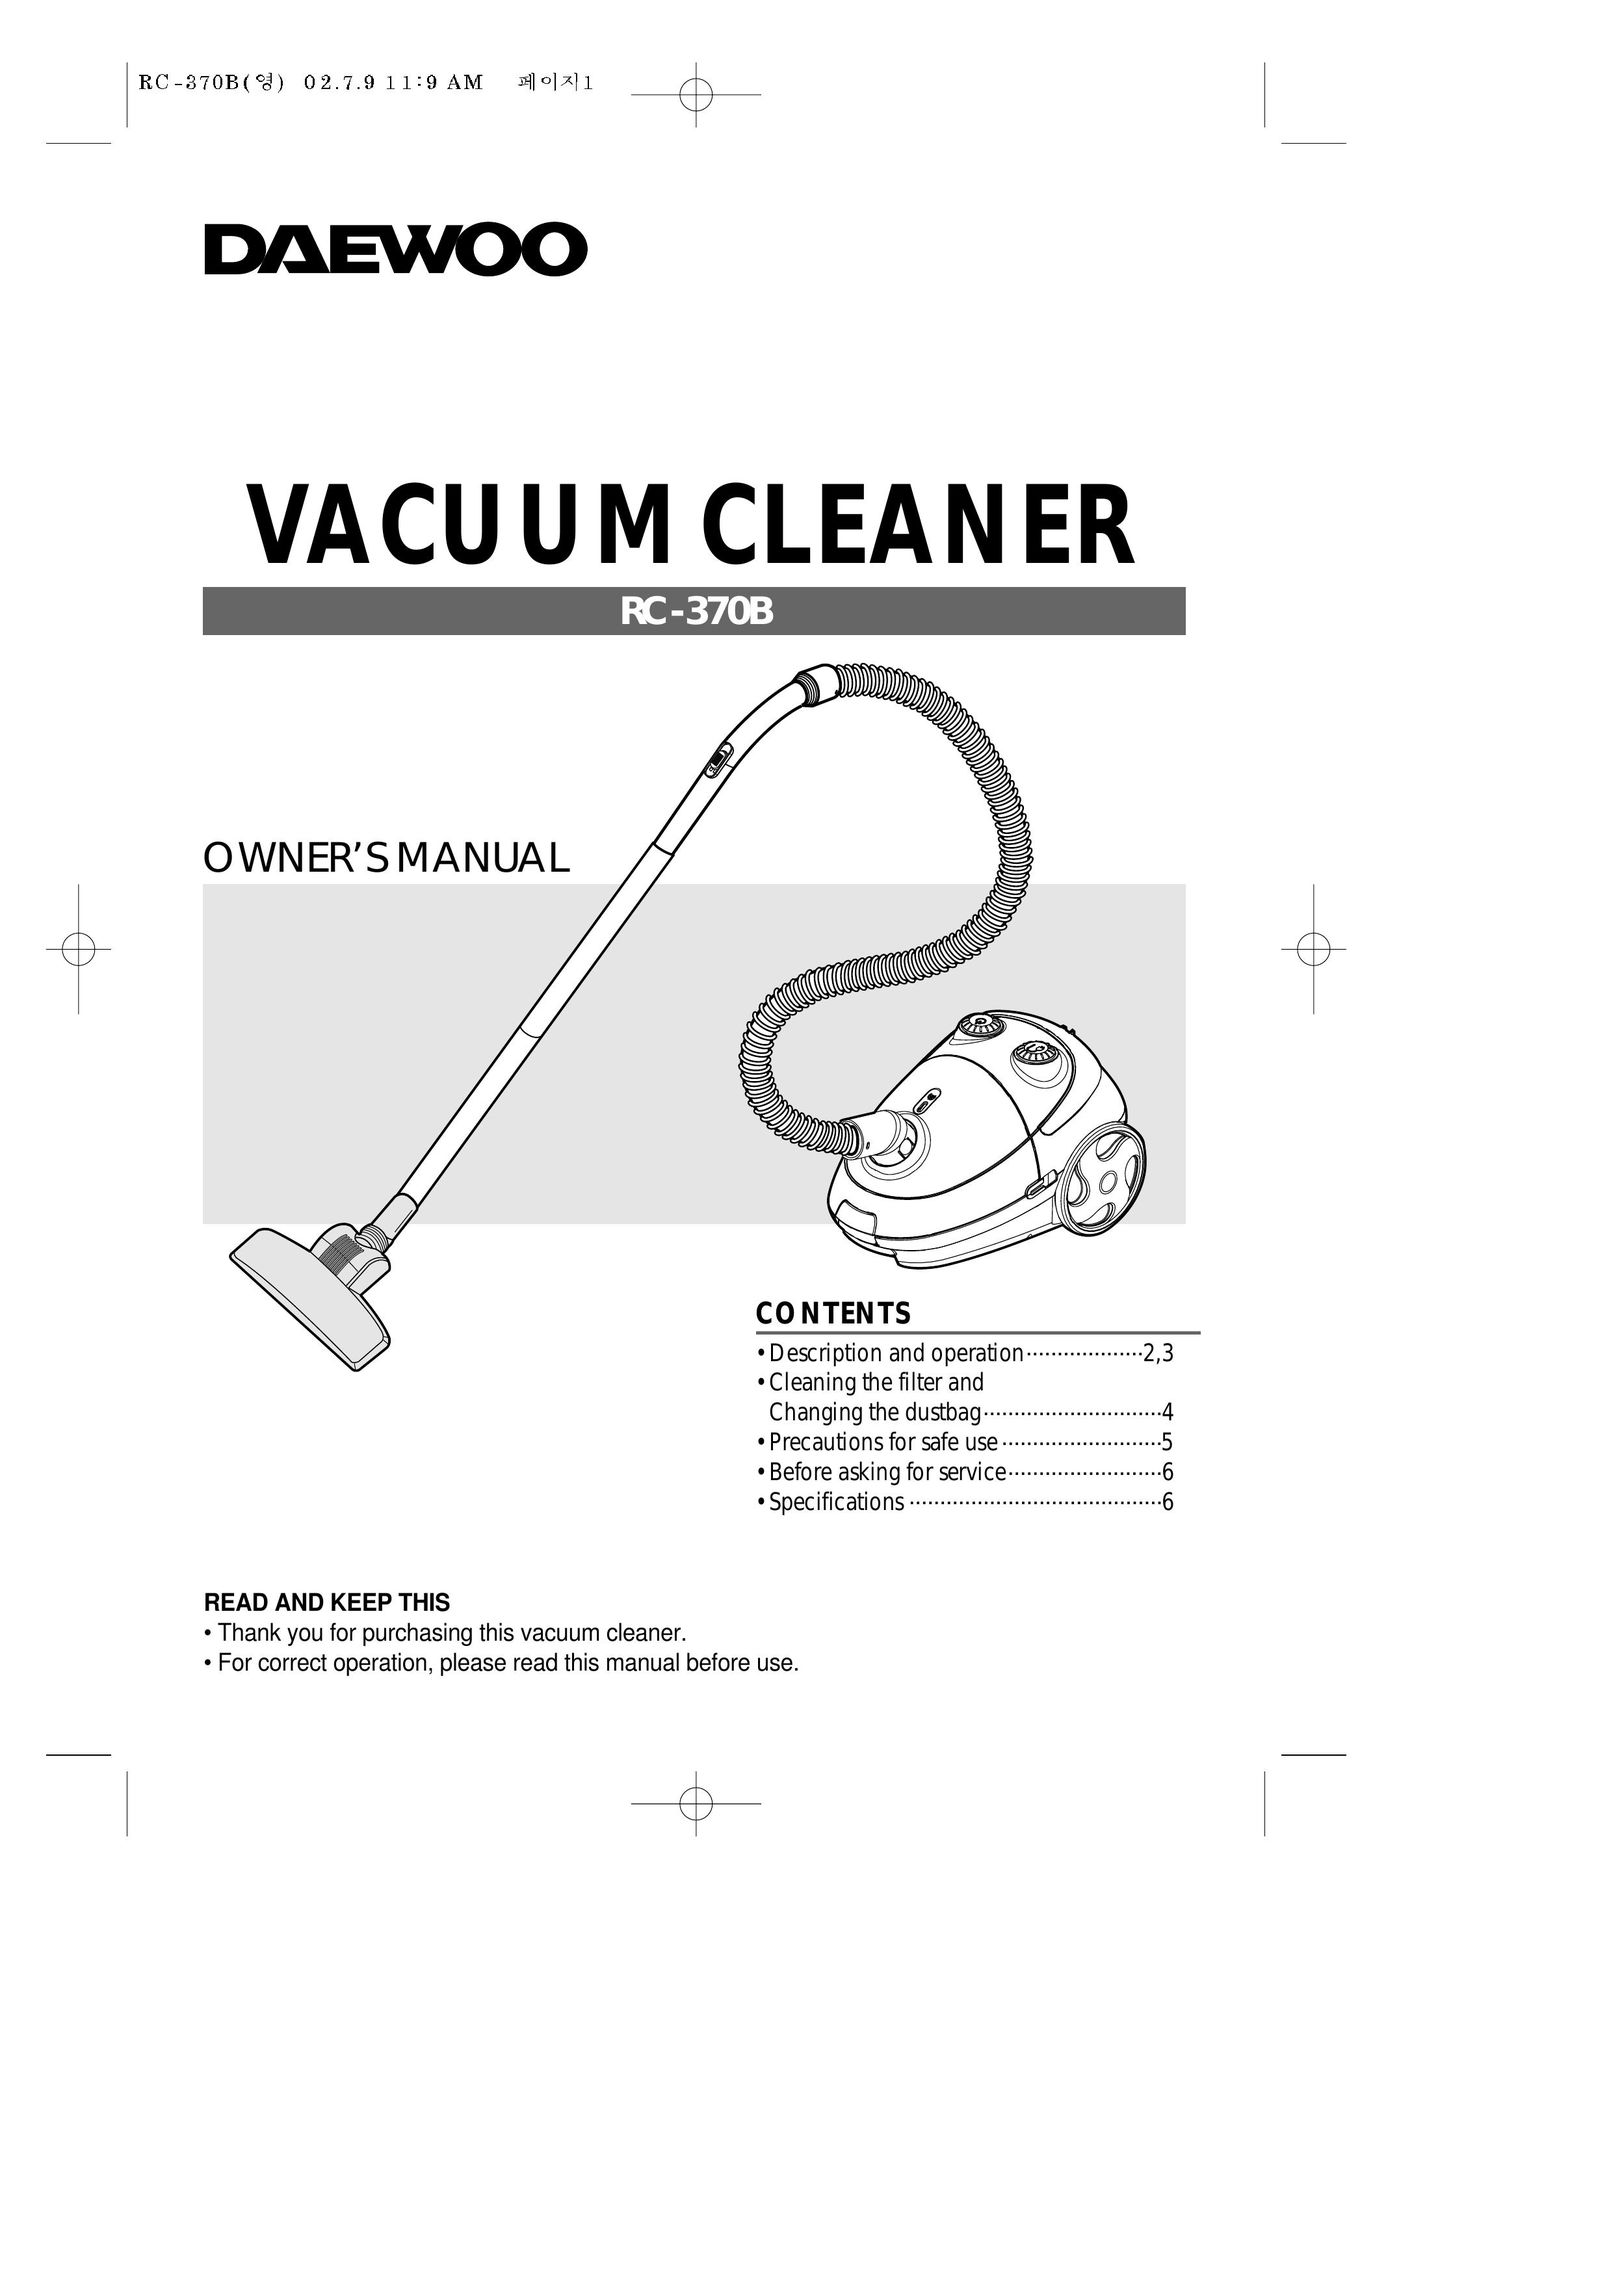 Daewoo RC-370B Vacuum Cleaner User Manual